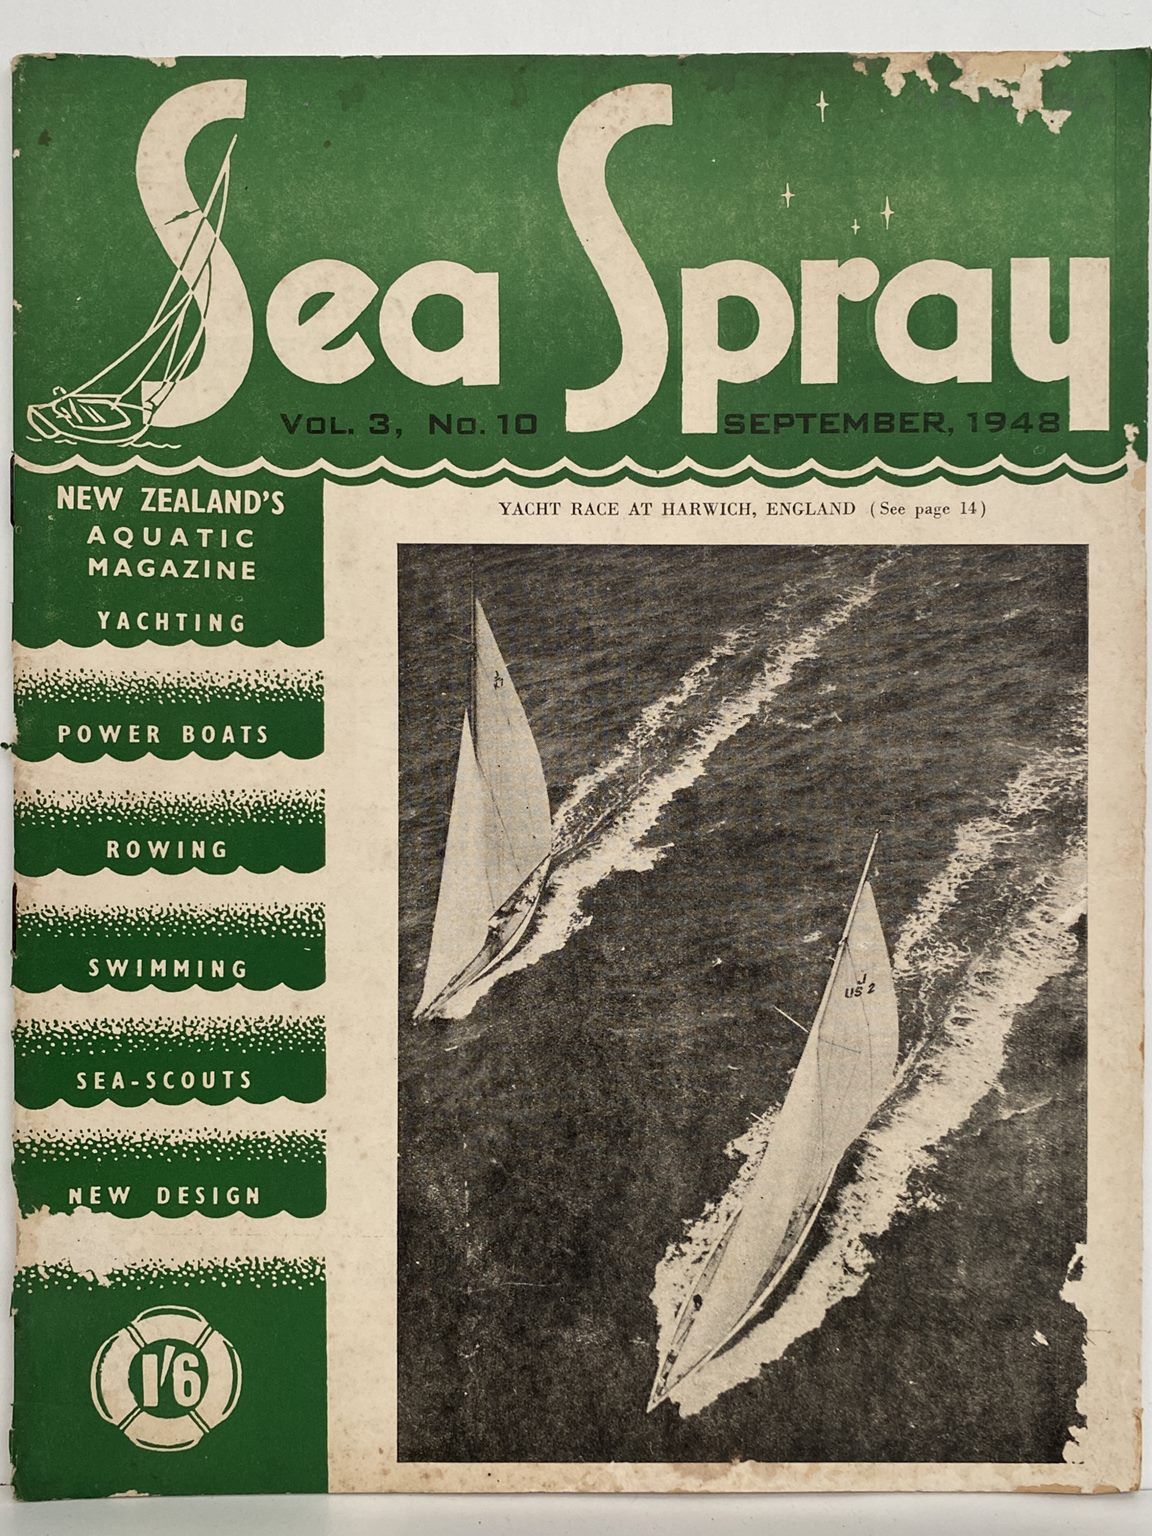 VINTAGE MAGAZINE: Sea Spray - Vol. 3, No. 10 - September 1948